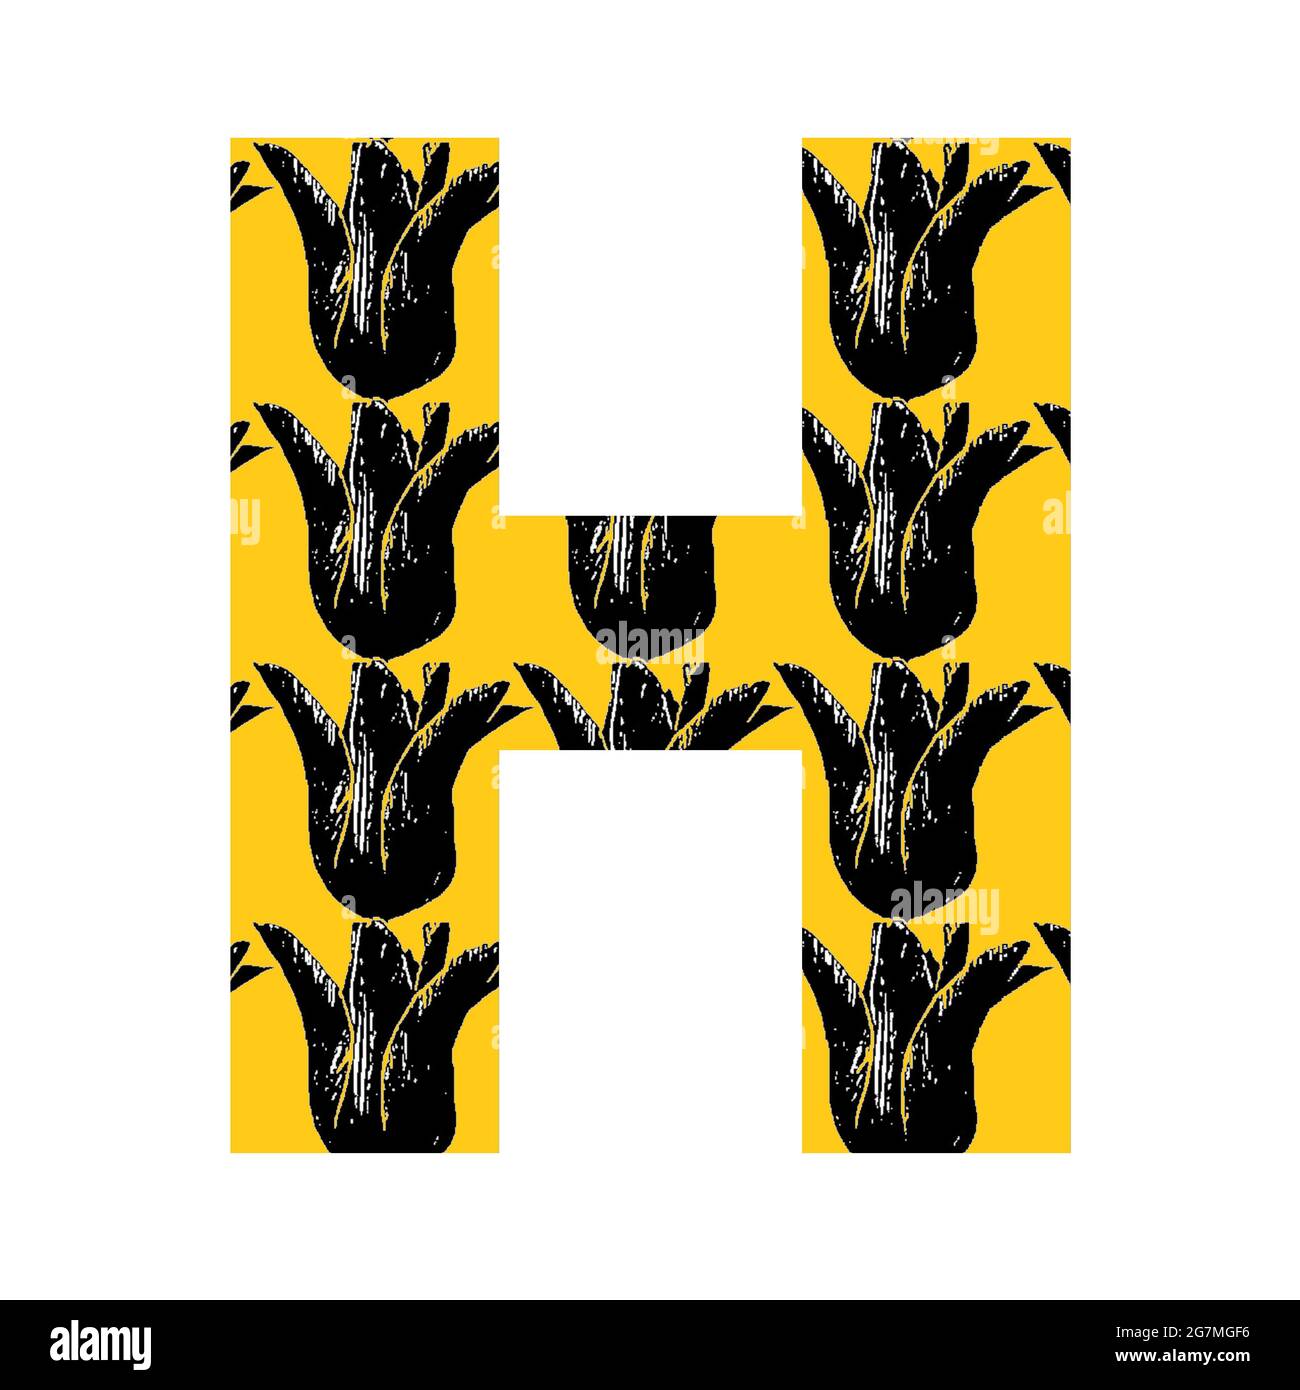 Lettera H dell'alfabeto fatta con un motivo di tulipano nero su sfondo giallo, isolato su sfondo bianco Foto Stock